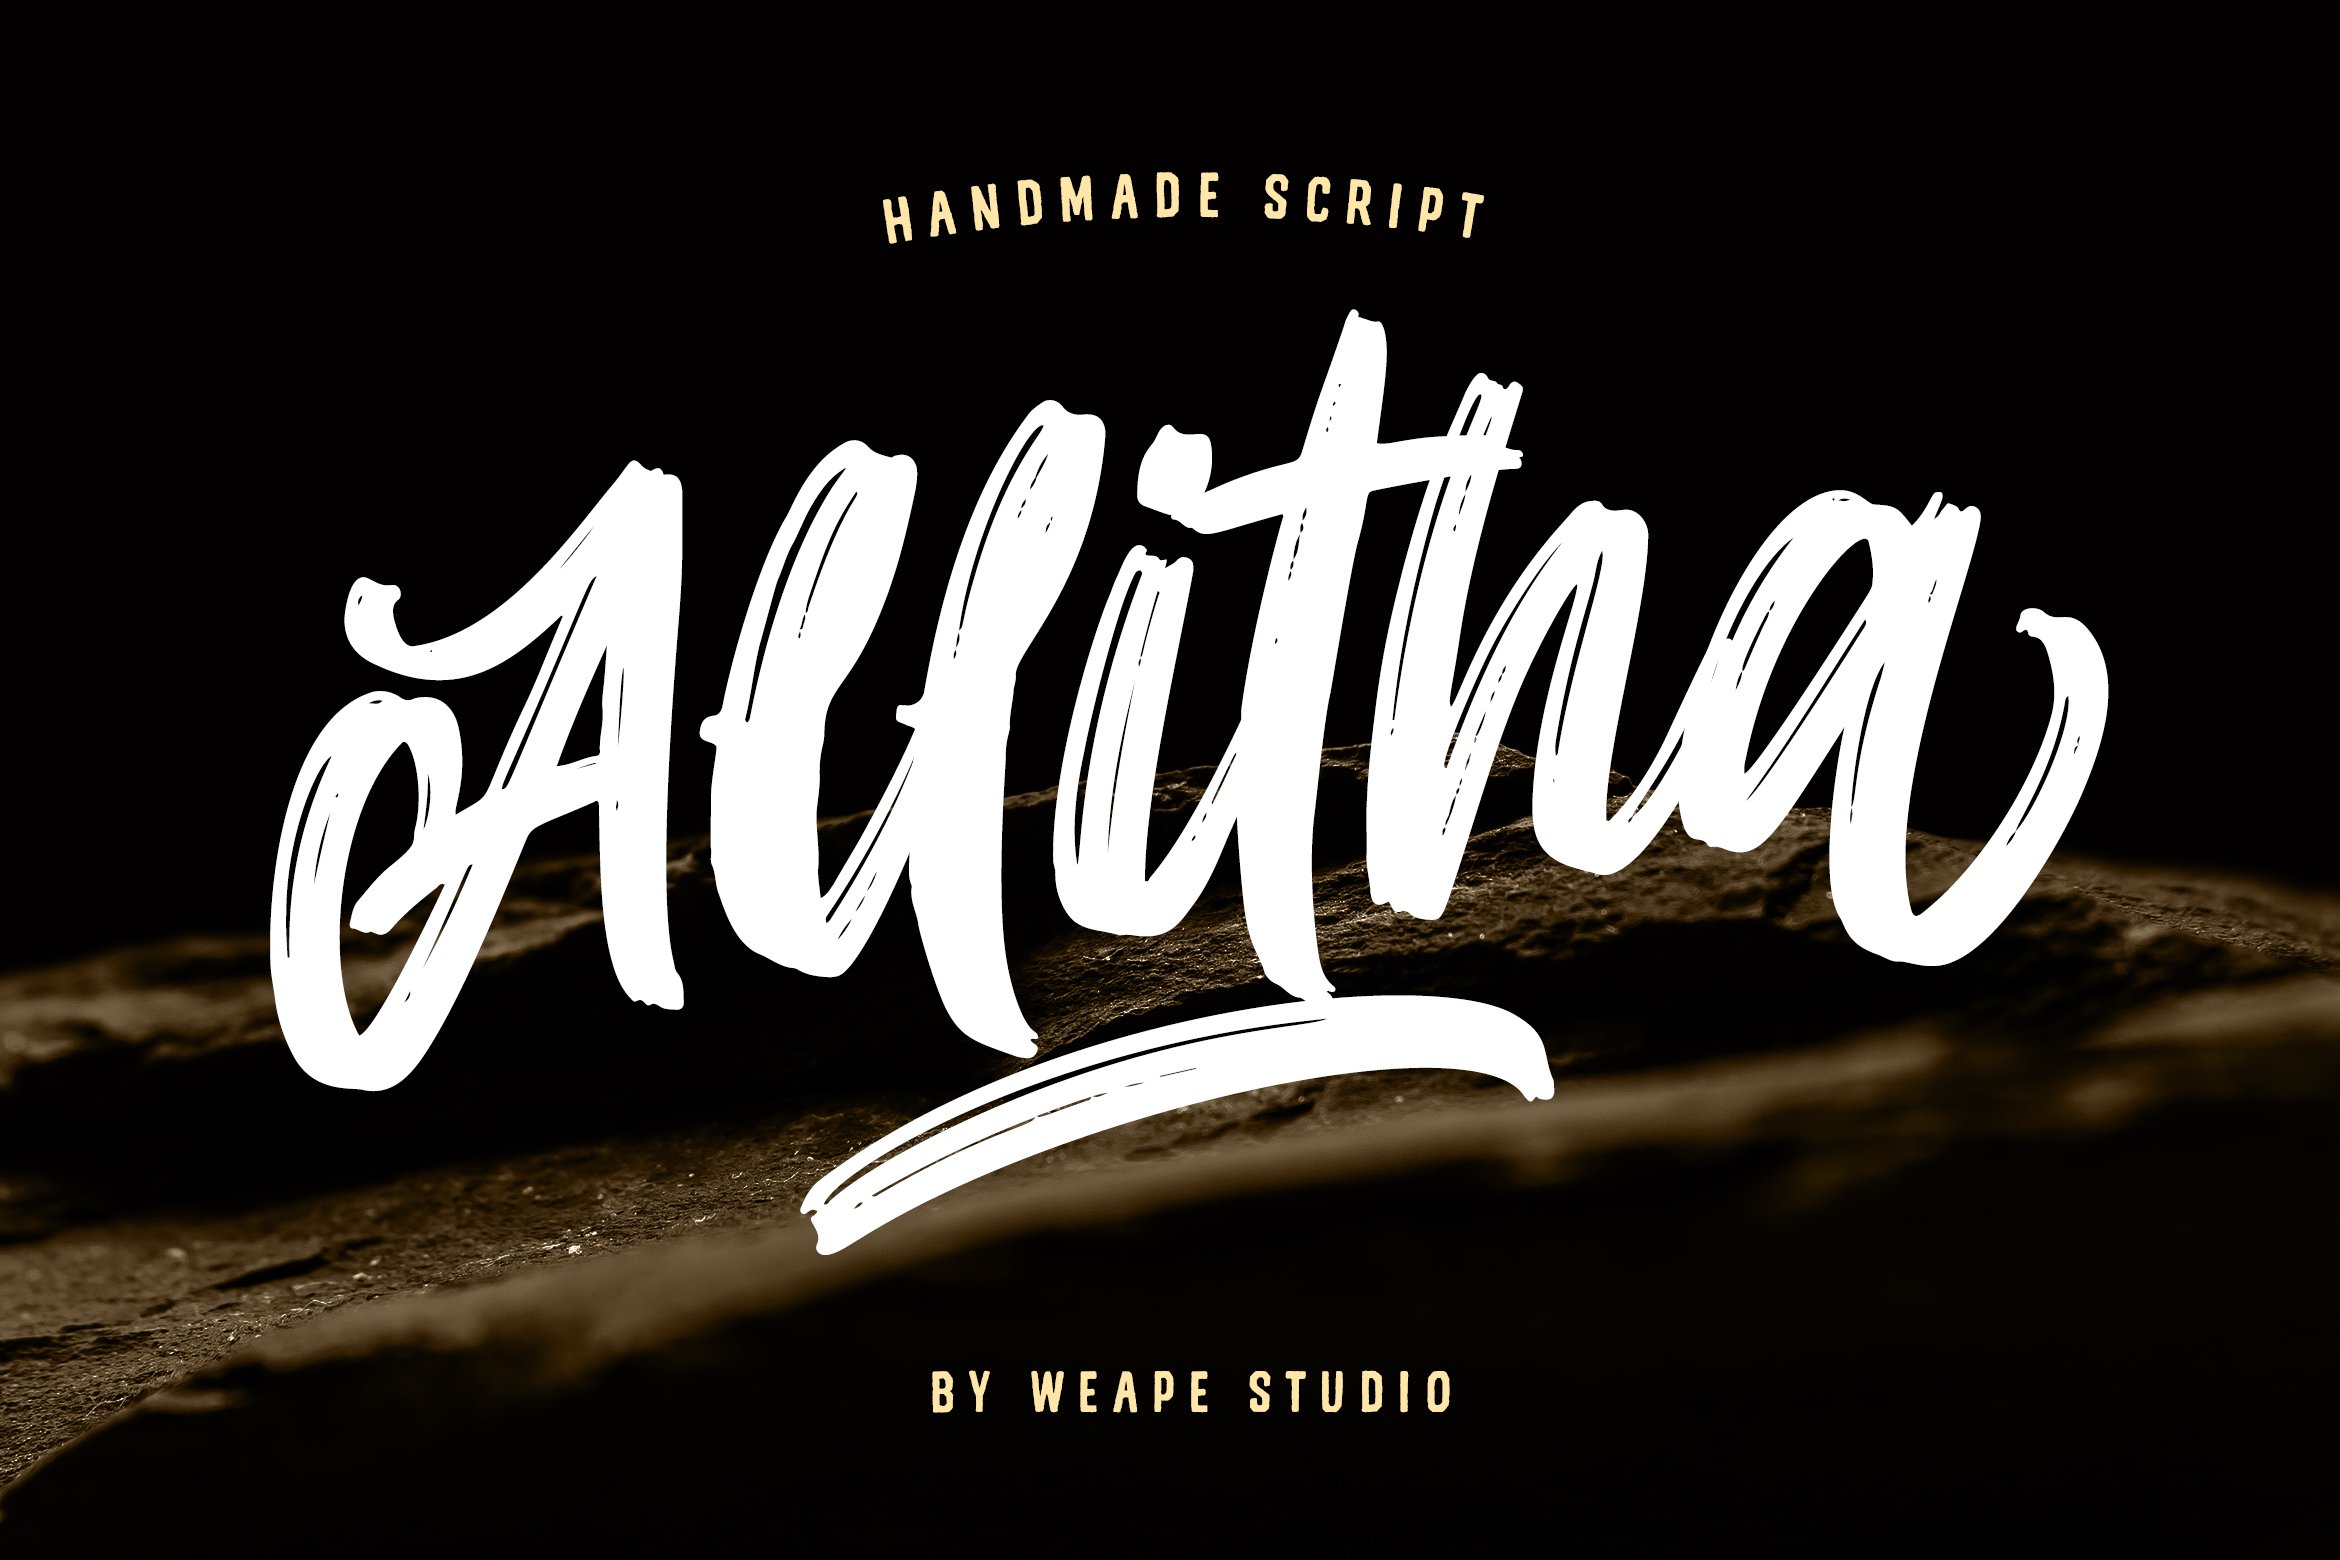 Allitha Handmade Script cover image.